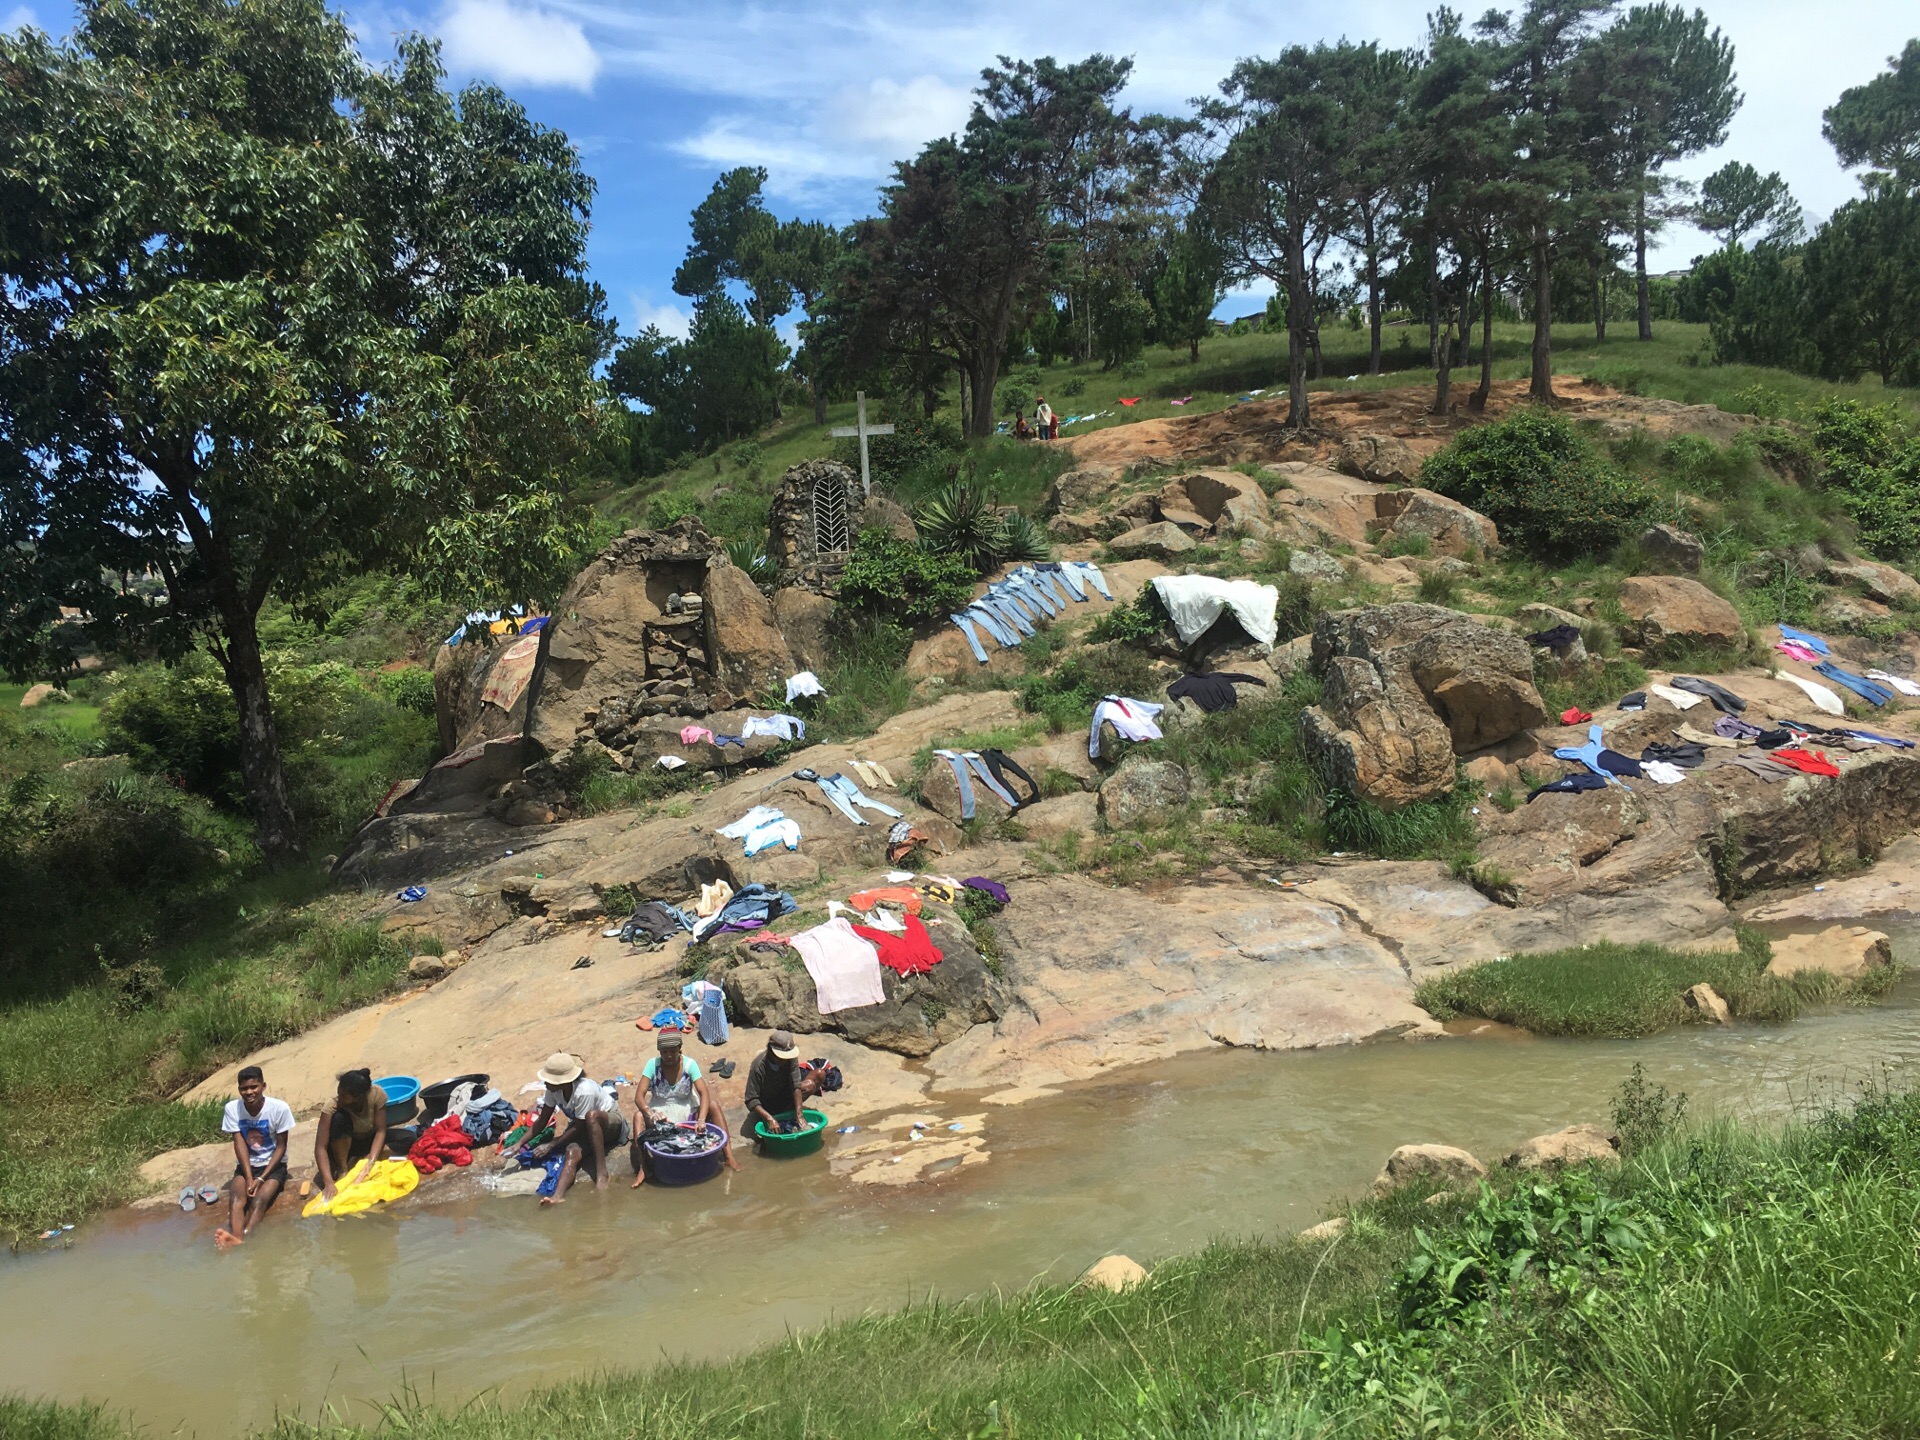 初来乍到马达加斯加 两旁街景吸引人的 是随处铺放整齐的衣服 经过河边 更随时可以看到洗衣服的人们 彷